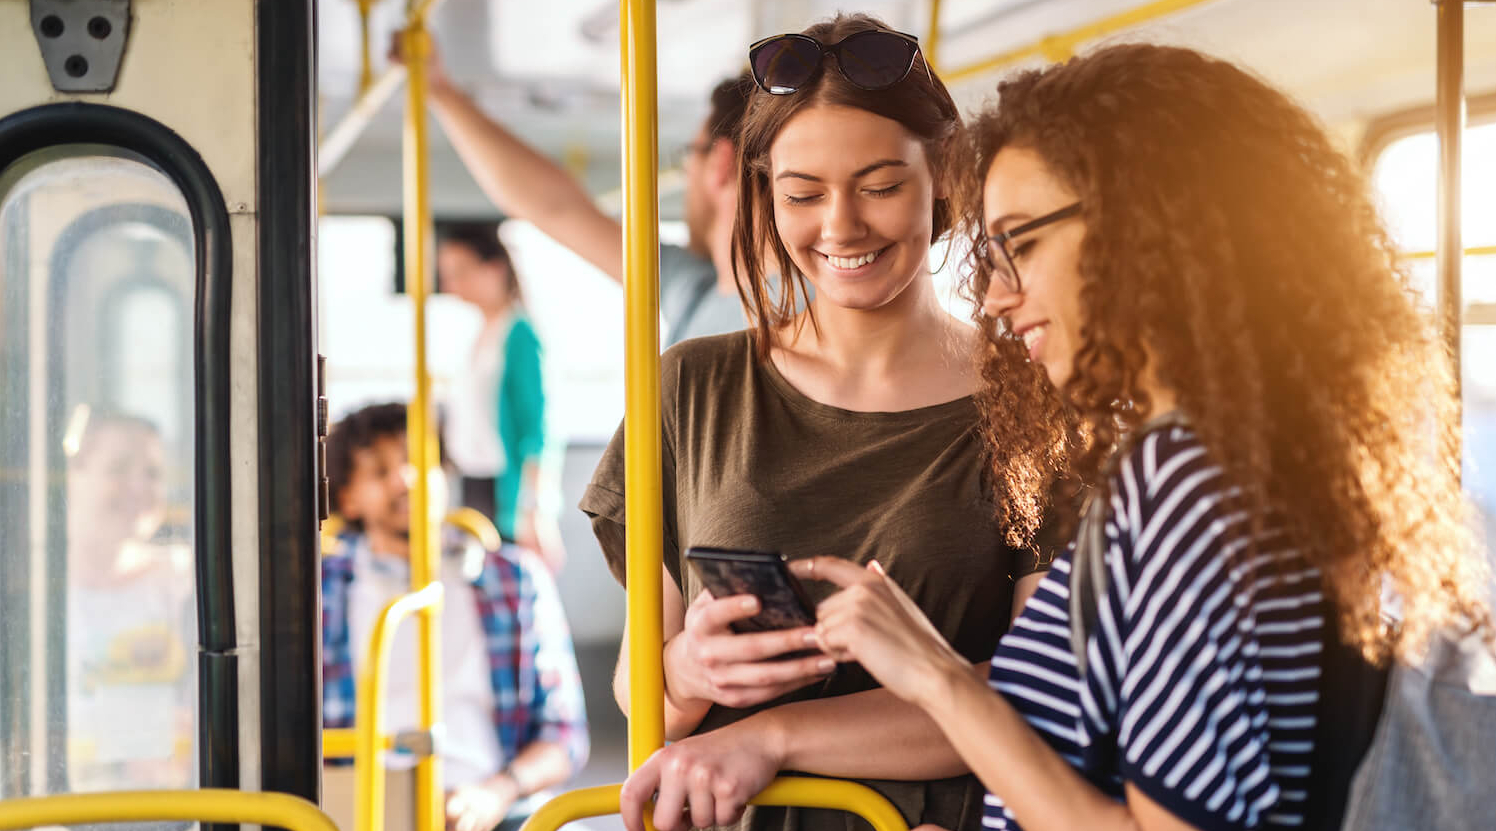 Zwei junge Frauen stehen gut gelaunt in einem Bus und schauen auf ein Smartphone.